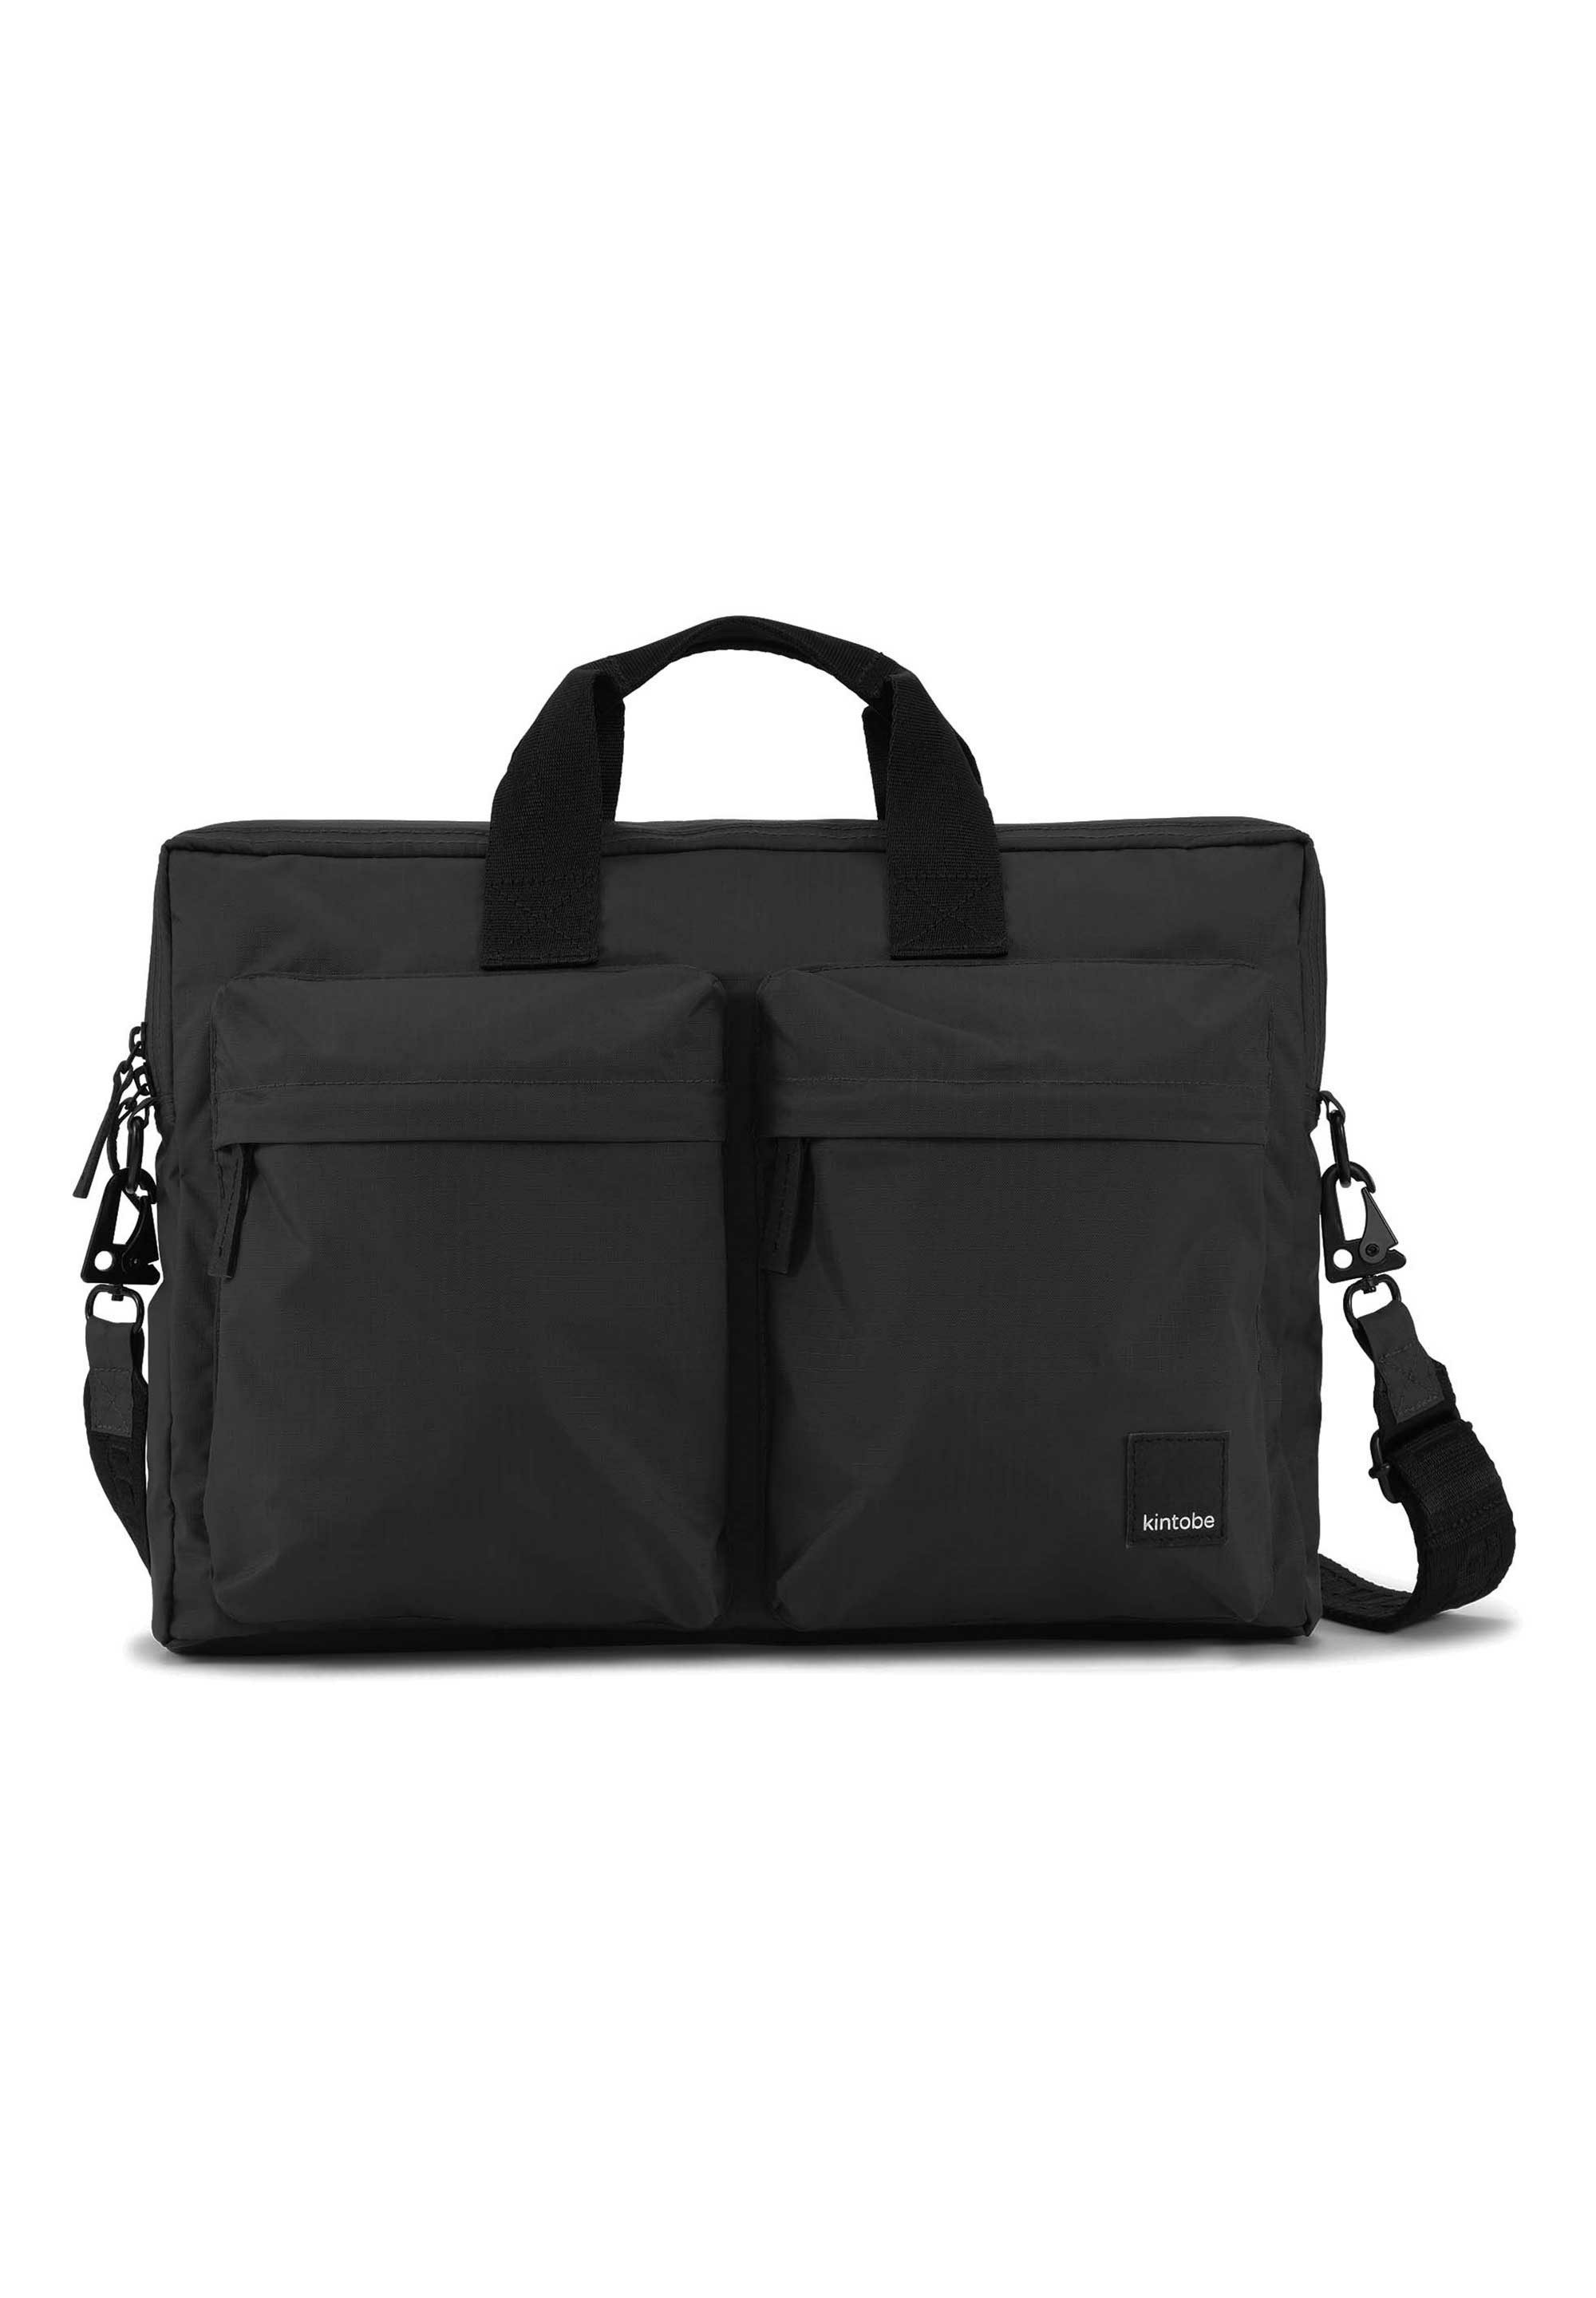 kintobe Messenger Bag SAGE, Die hochwertige Ripstop-Nylonqualität, schwarze Metallbeschläge